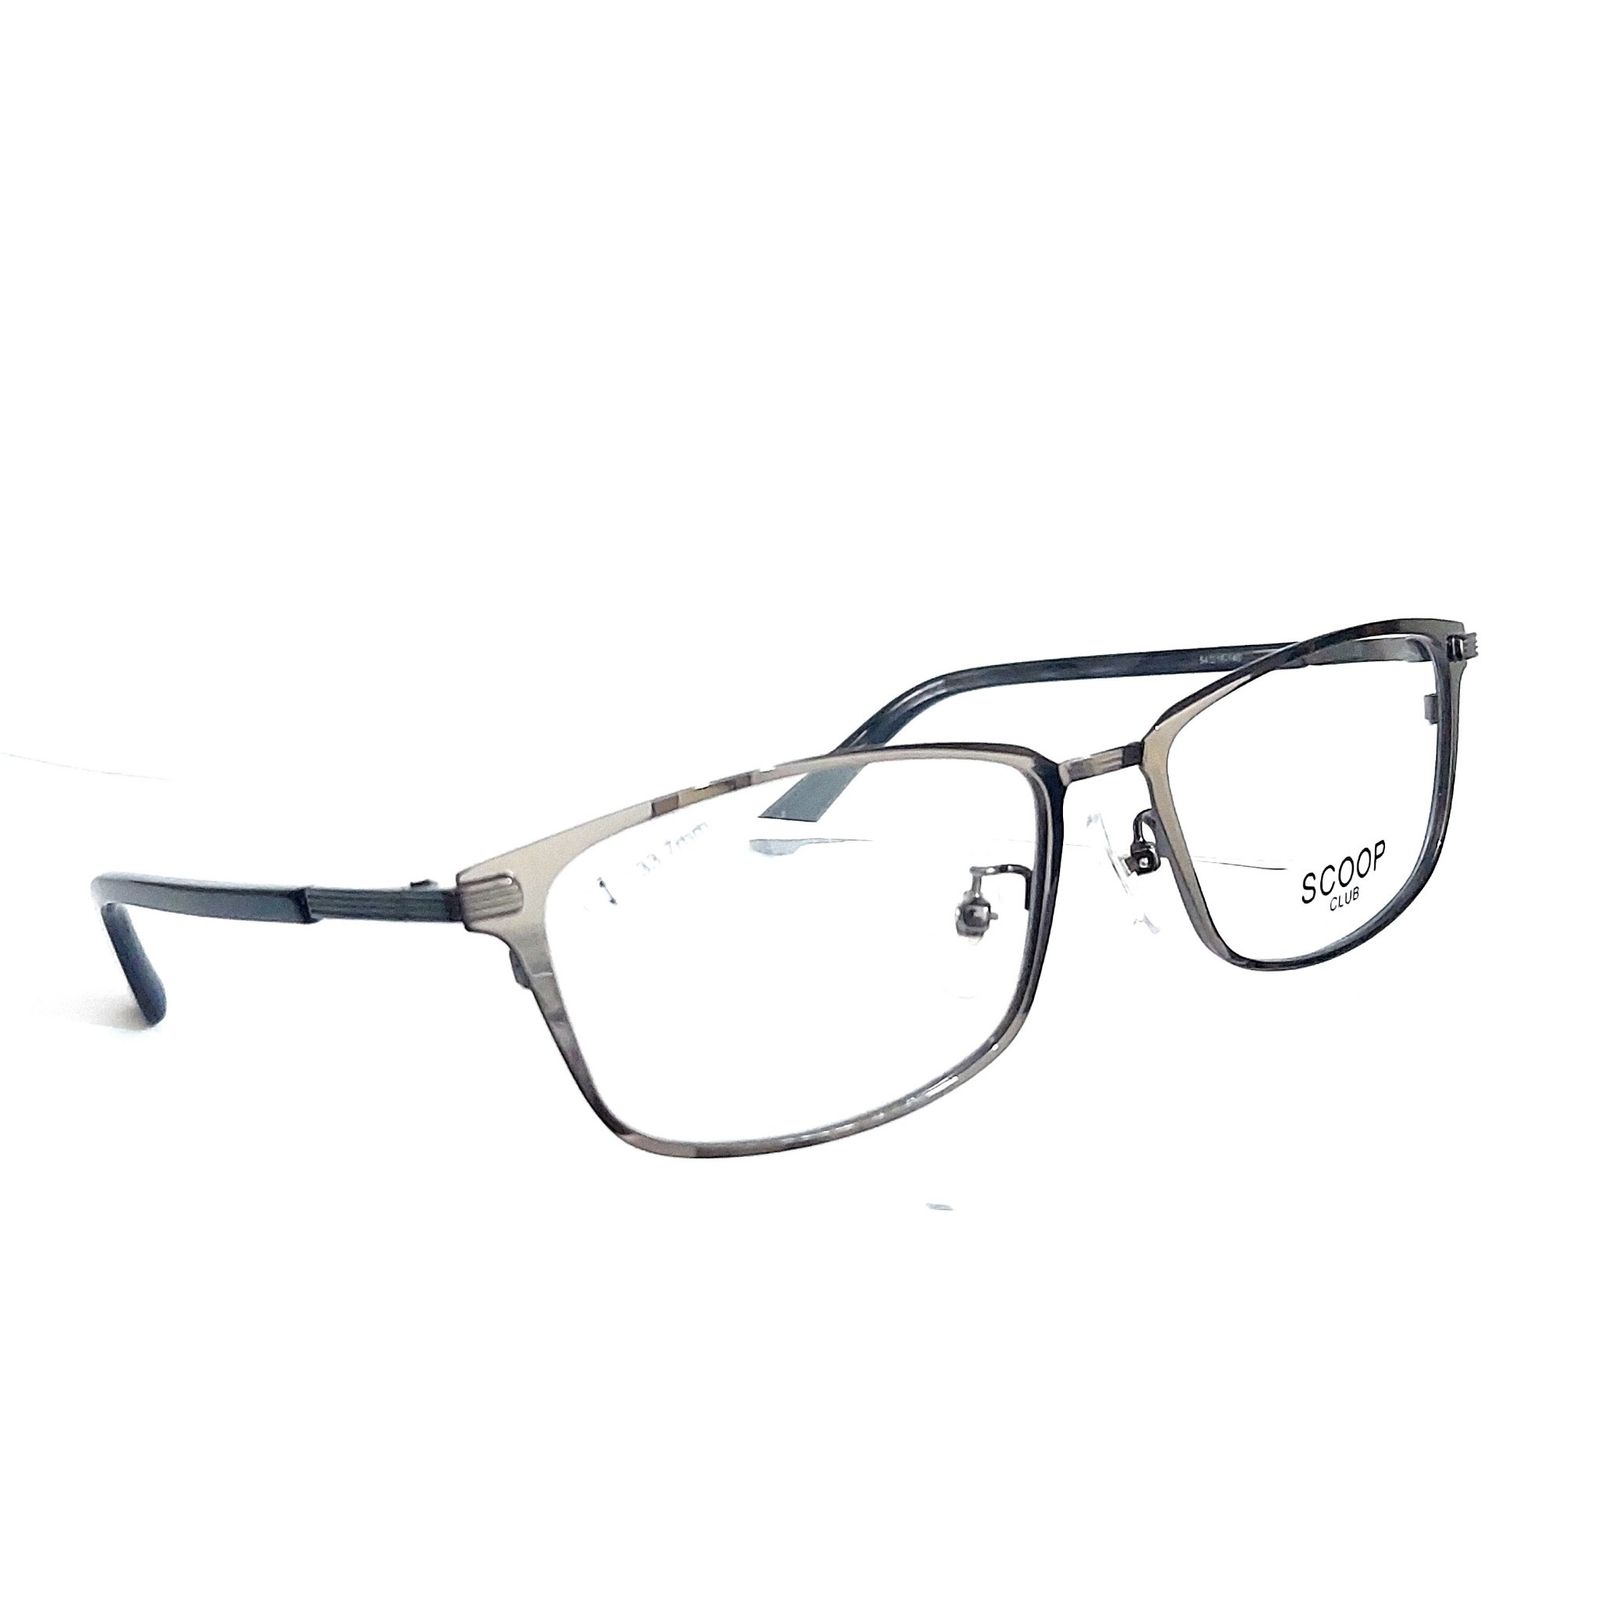 予約受付中 No.2527-メガネ Ristoro 55370円引き 木製フレーム 眼鏡 ...